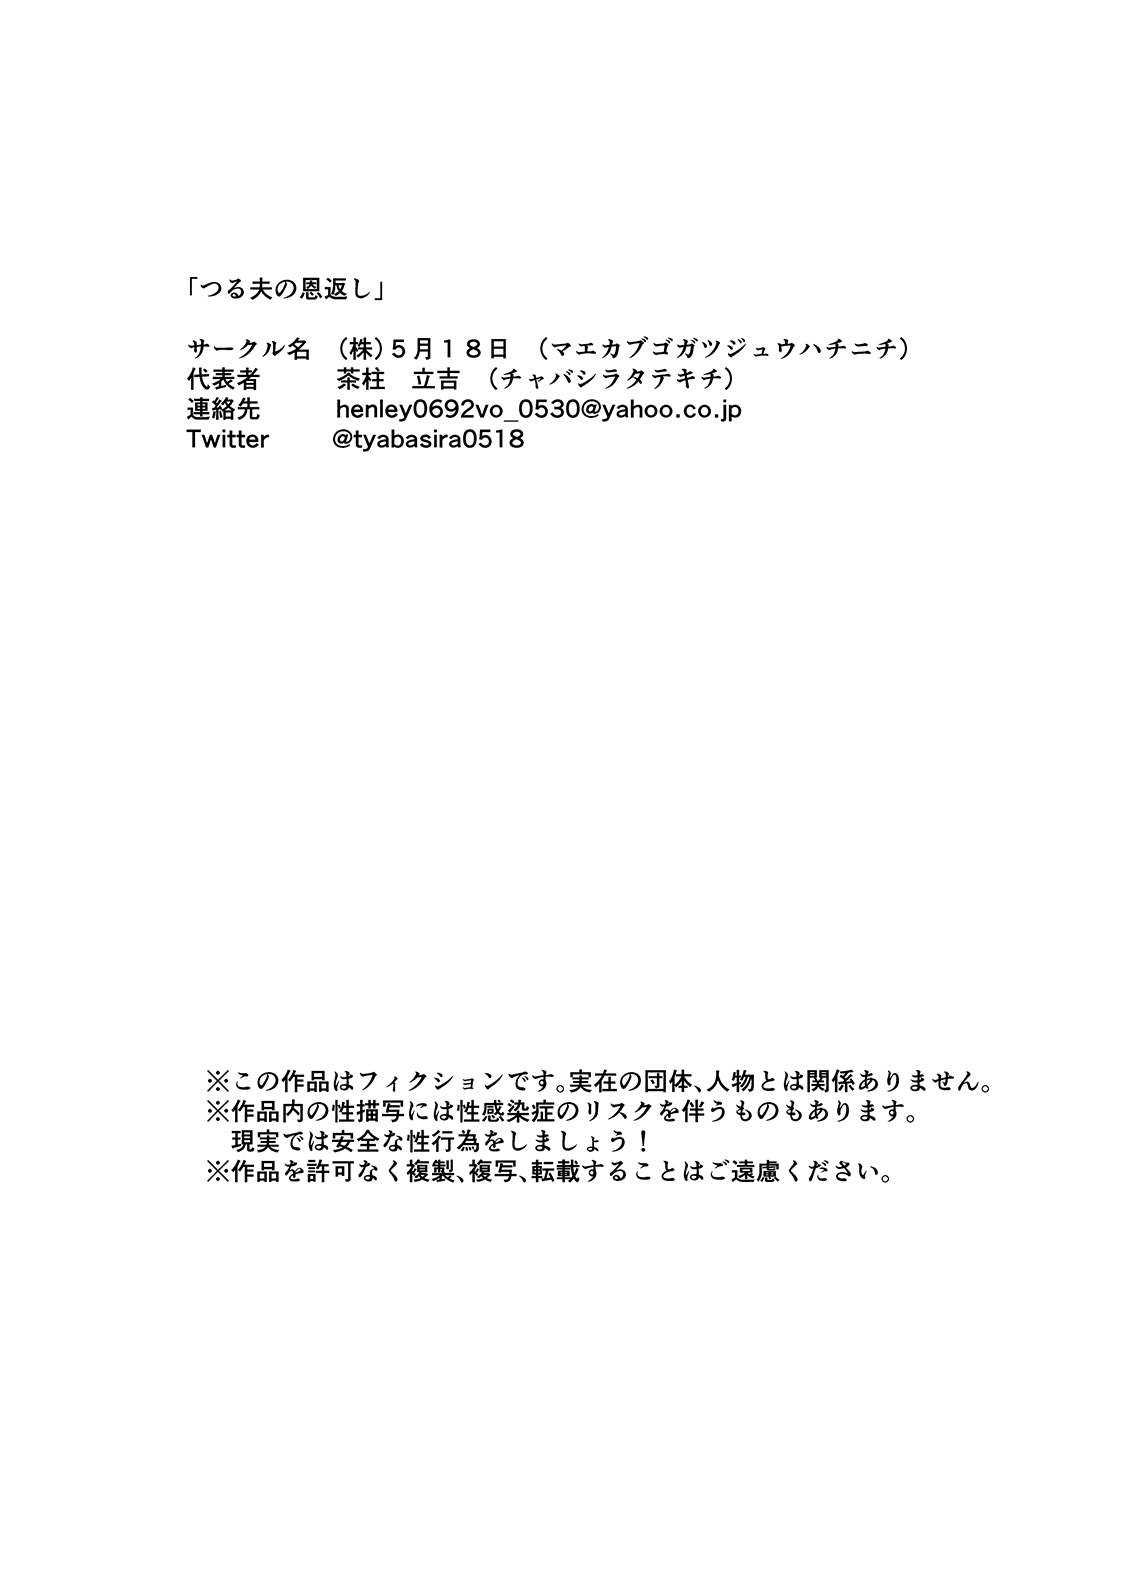 [Ochaocha Honpo (Chabashira Tatsukichi)] Tsuru Otto no Ongaeshi [Digital] page 47 full